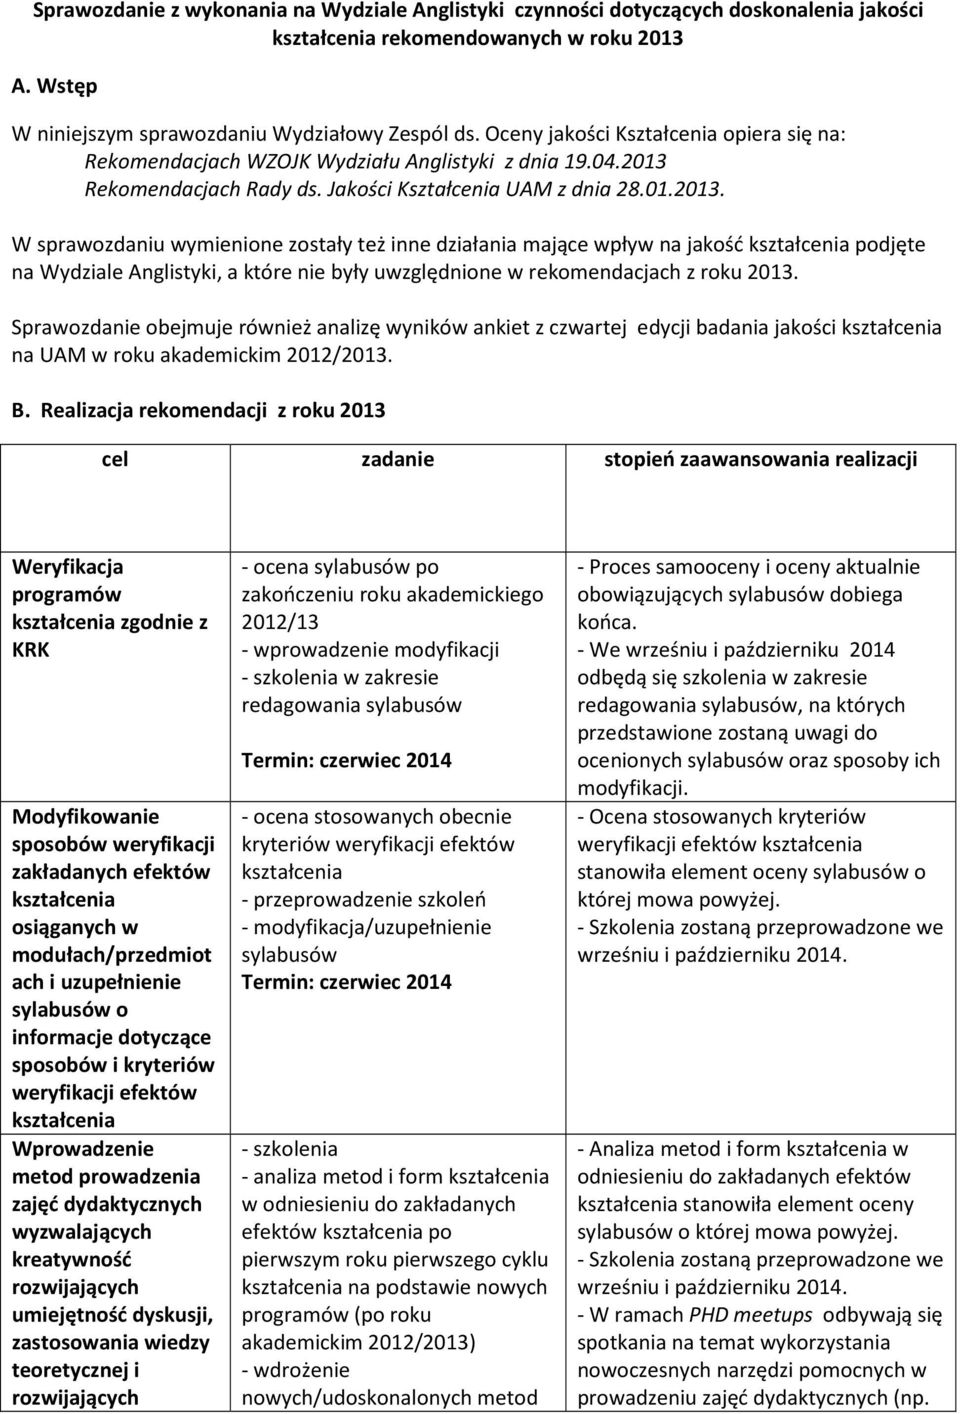 Rekomendacjach Rady ds. Jakości Kształcenia UAM z dnia 28.01.2013.